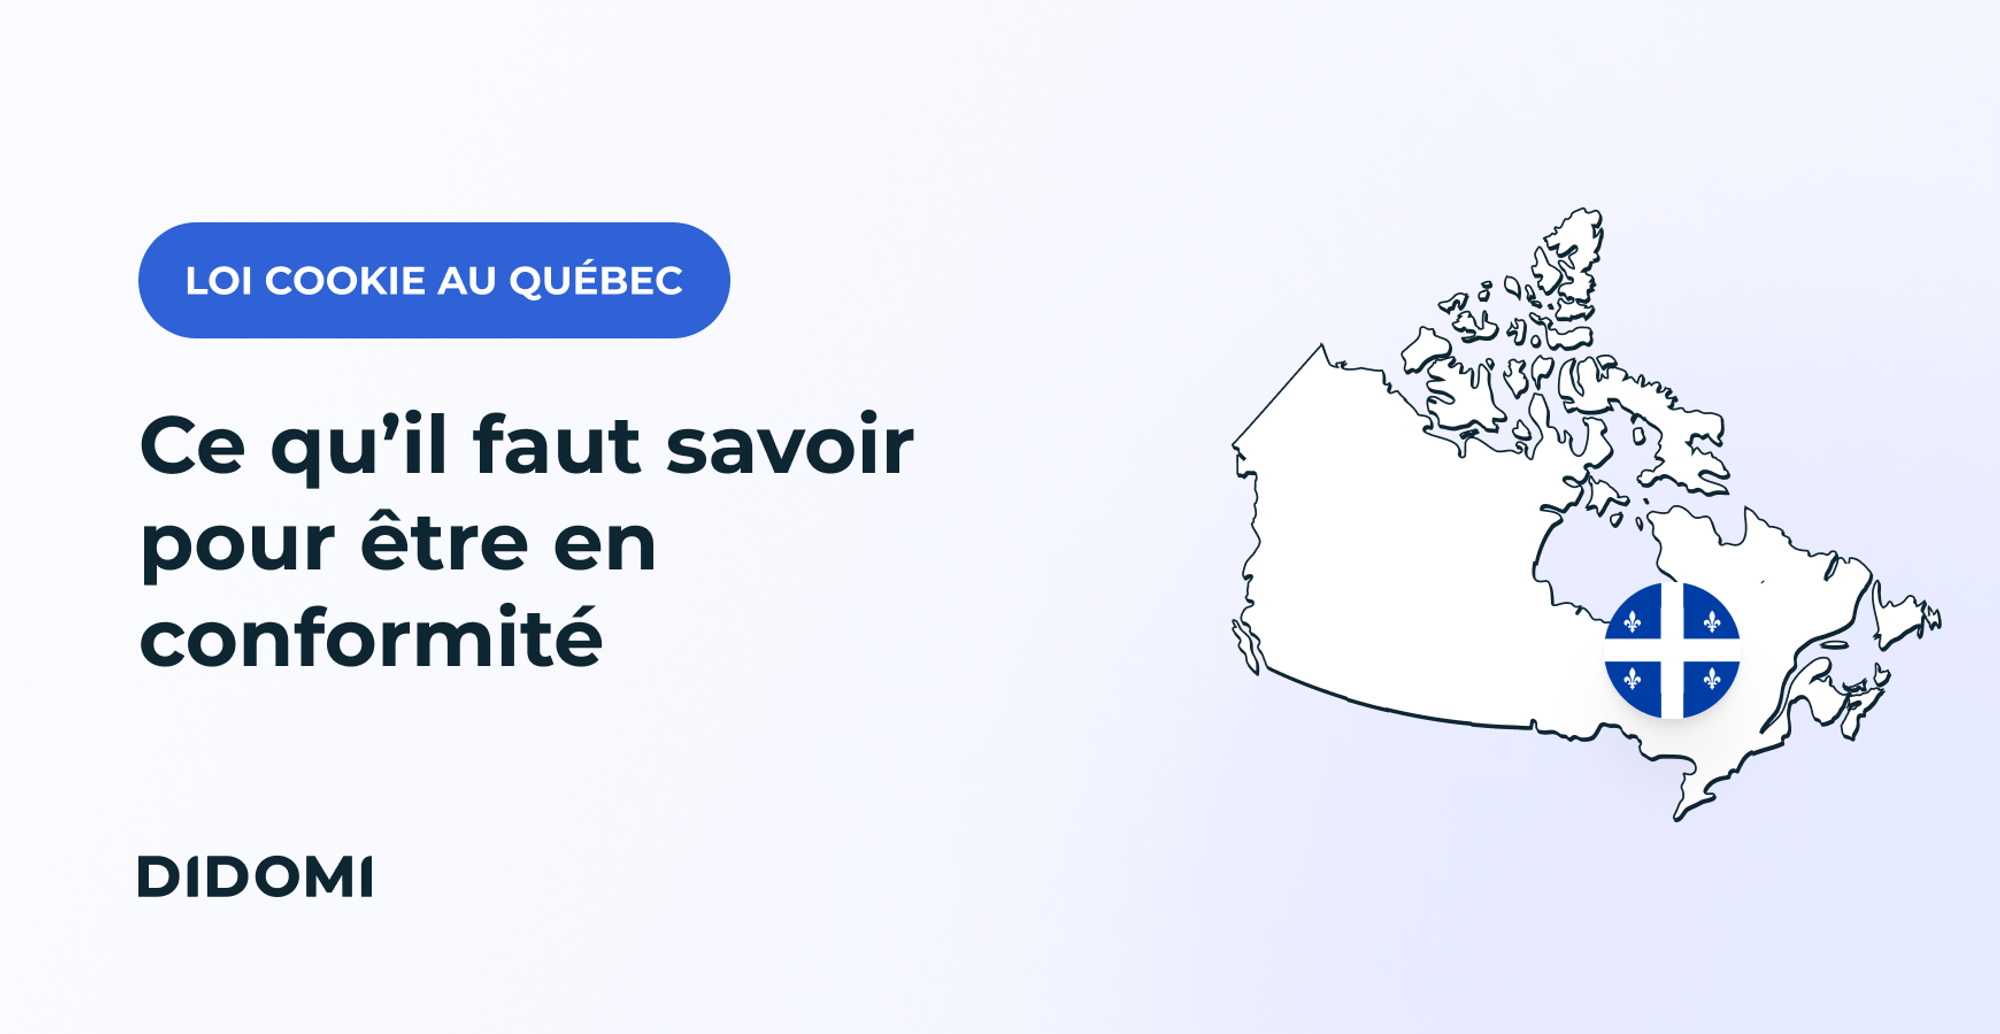 Une carte du Quebec avec le drapeau de la province, et la mention "Loi cookies au Québec", ainsi que le titre "Loi 25 du Québec: Tout ce qu'il faut savoir"